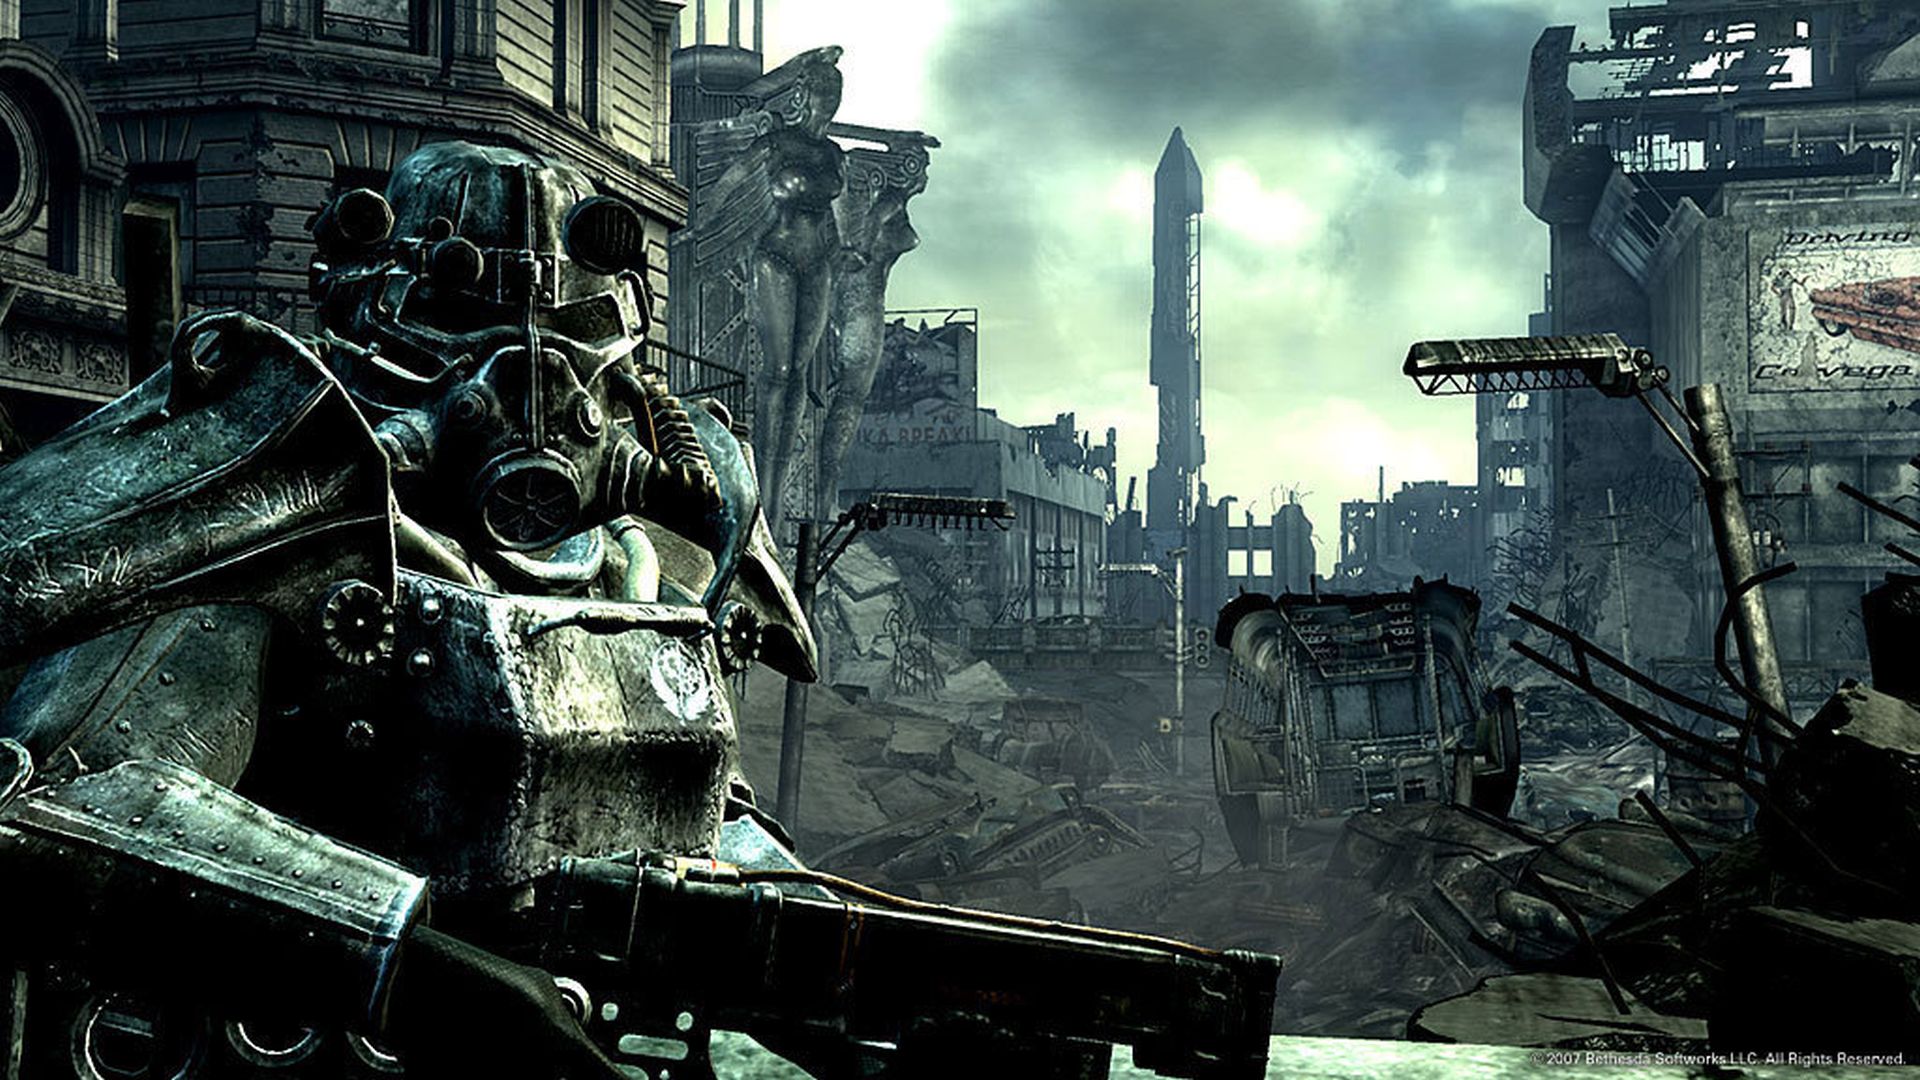 Создатель карты Fallout Vault столкнулся с самой большой проблемой, связанной с картой для отмененной игры, которой мог бы стать Fallout 3.